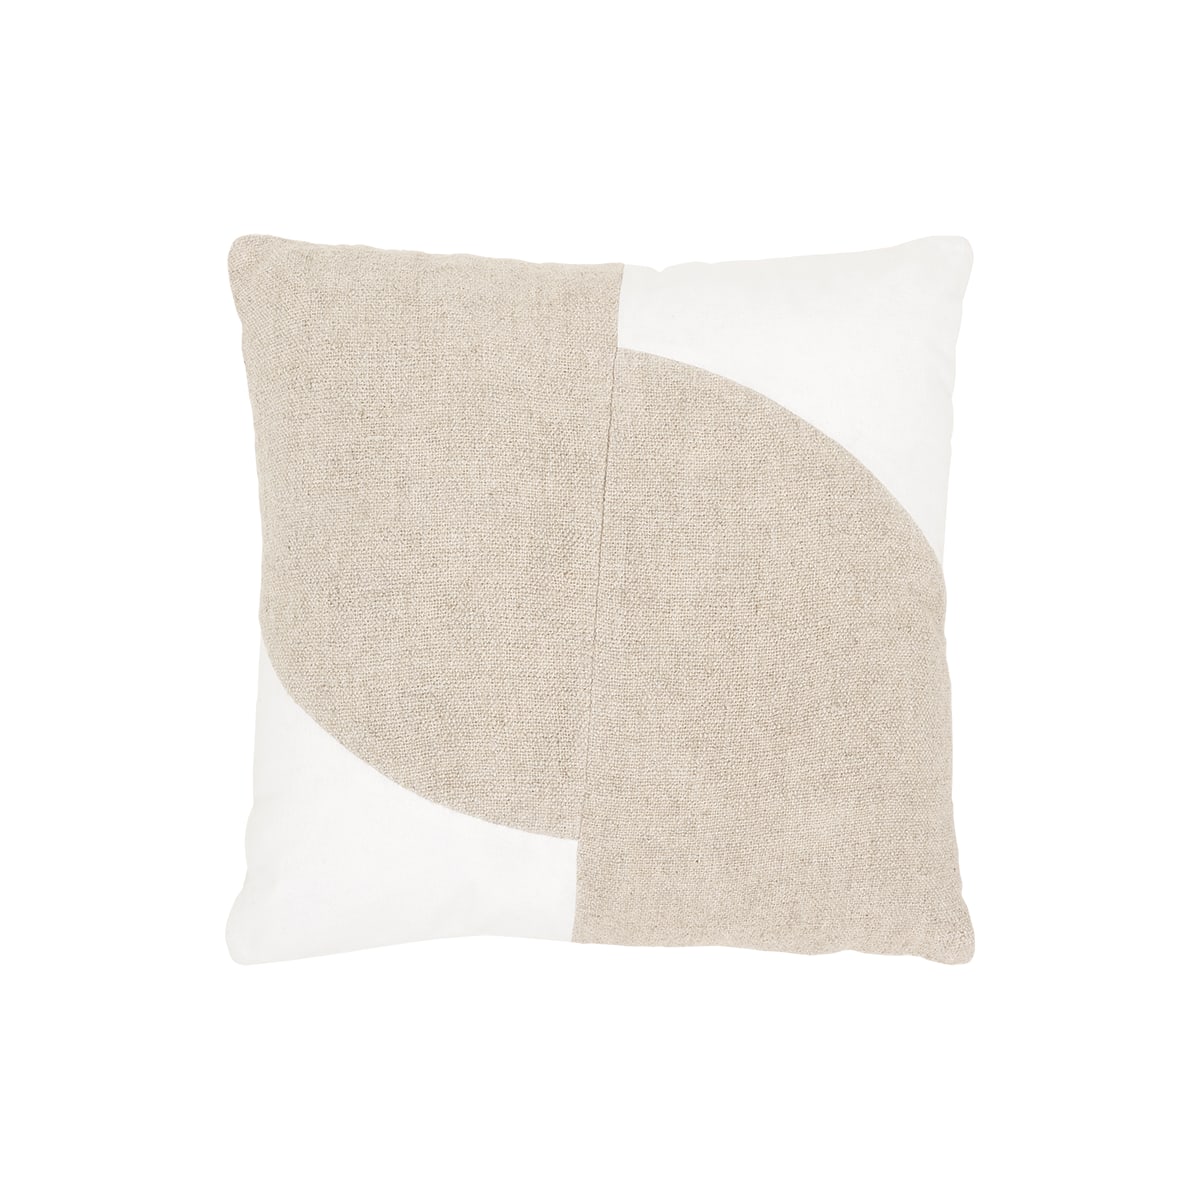 Maisa - Cuscino in cotone da 50 x 50 cm, beige